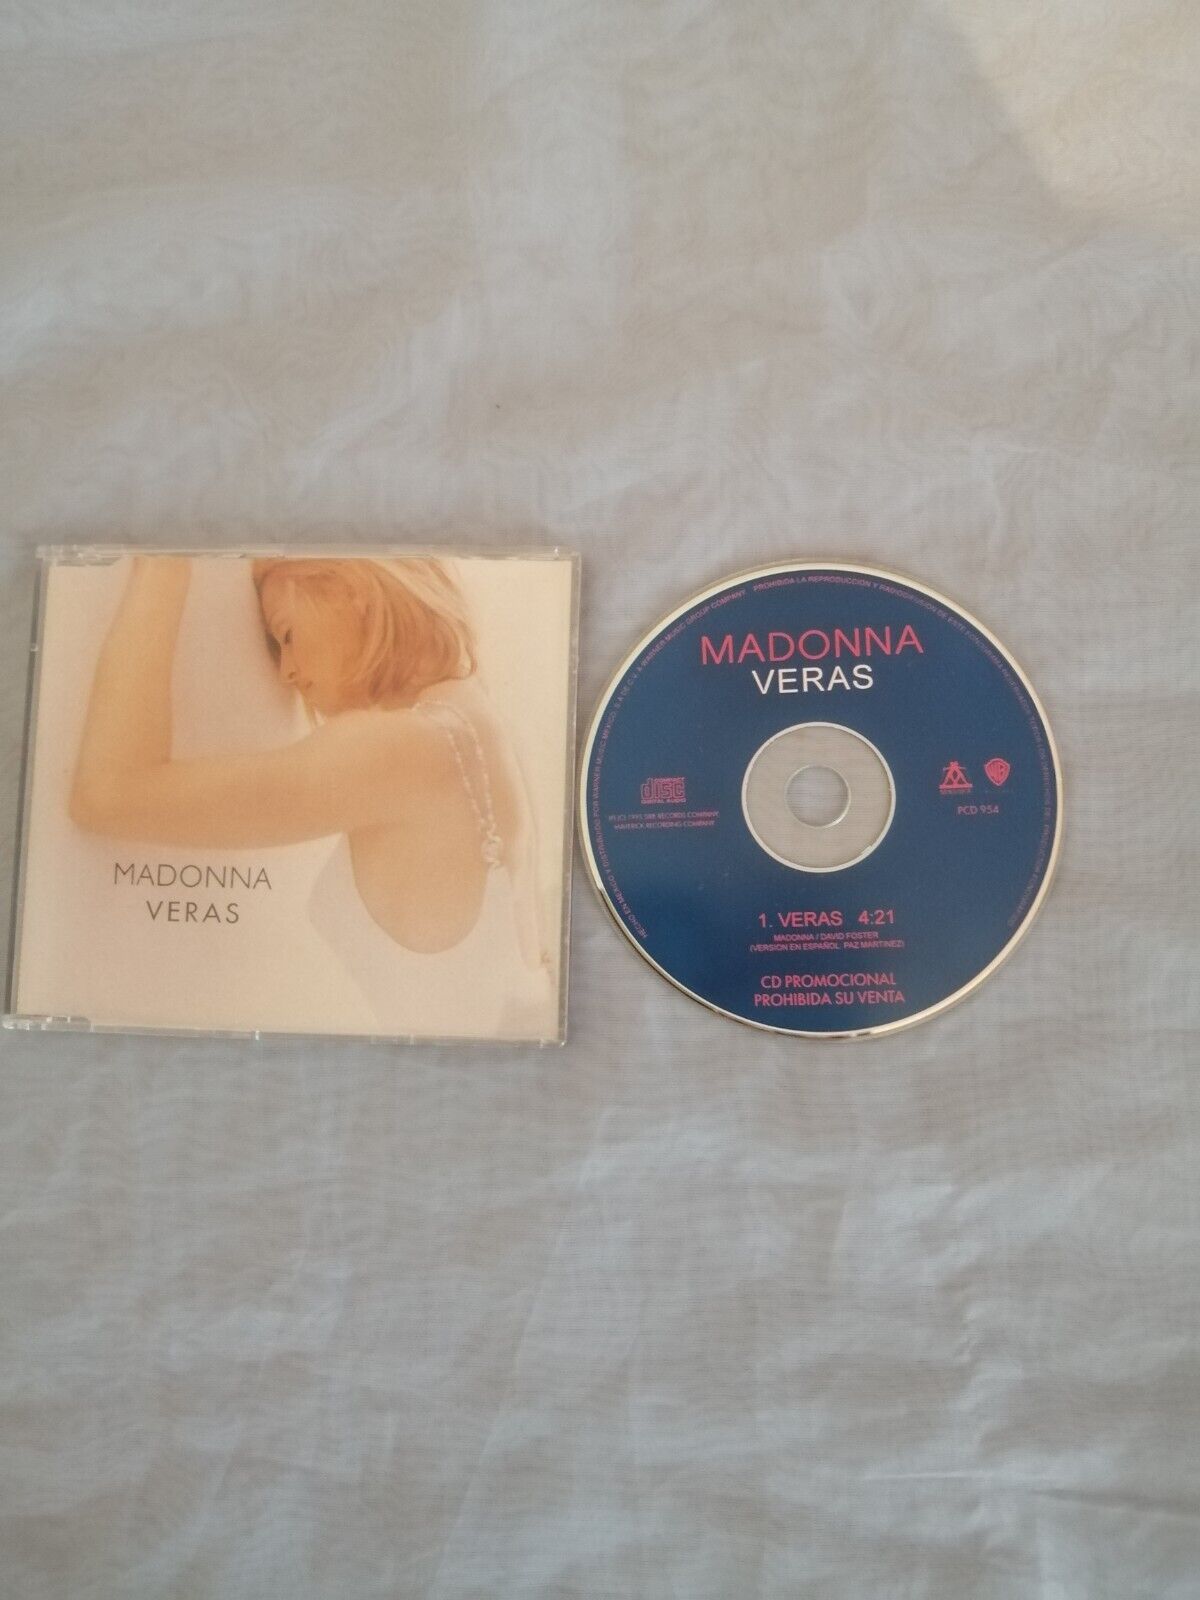 Madonna veras  single cd promo mexican